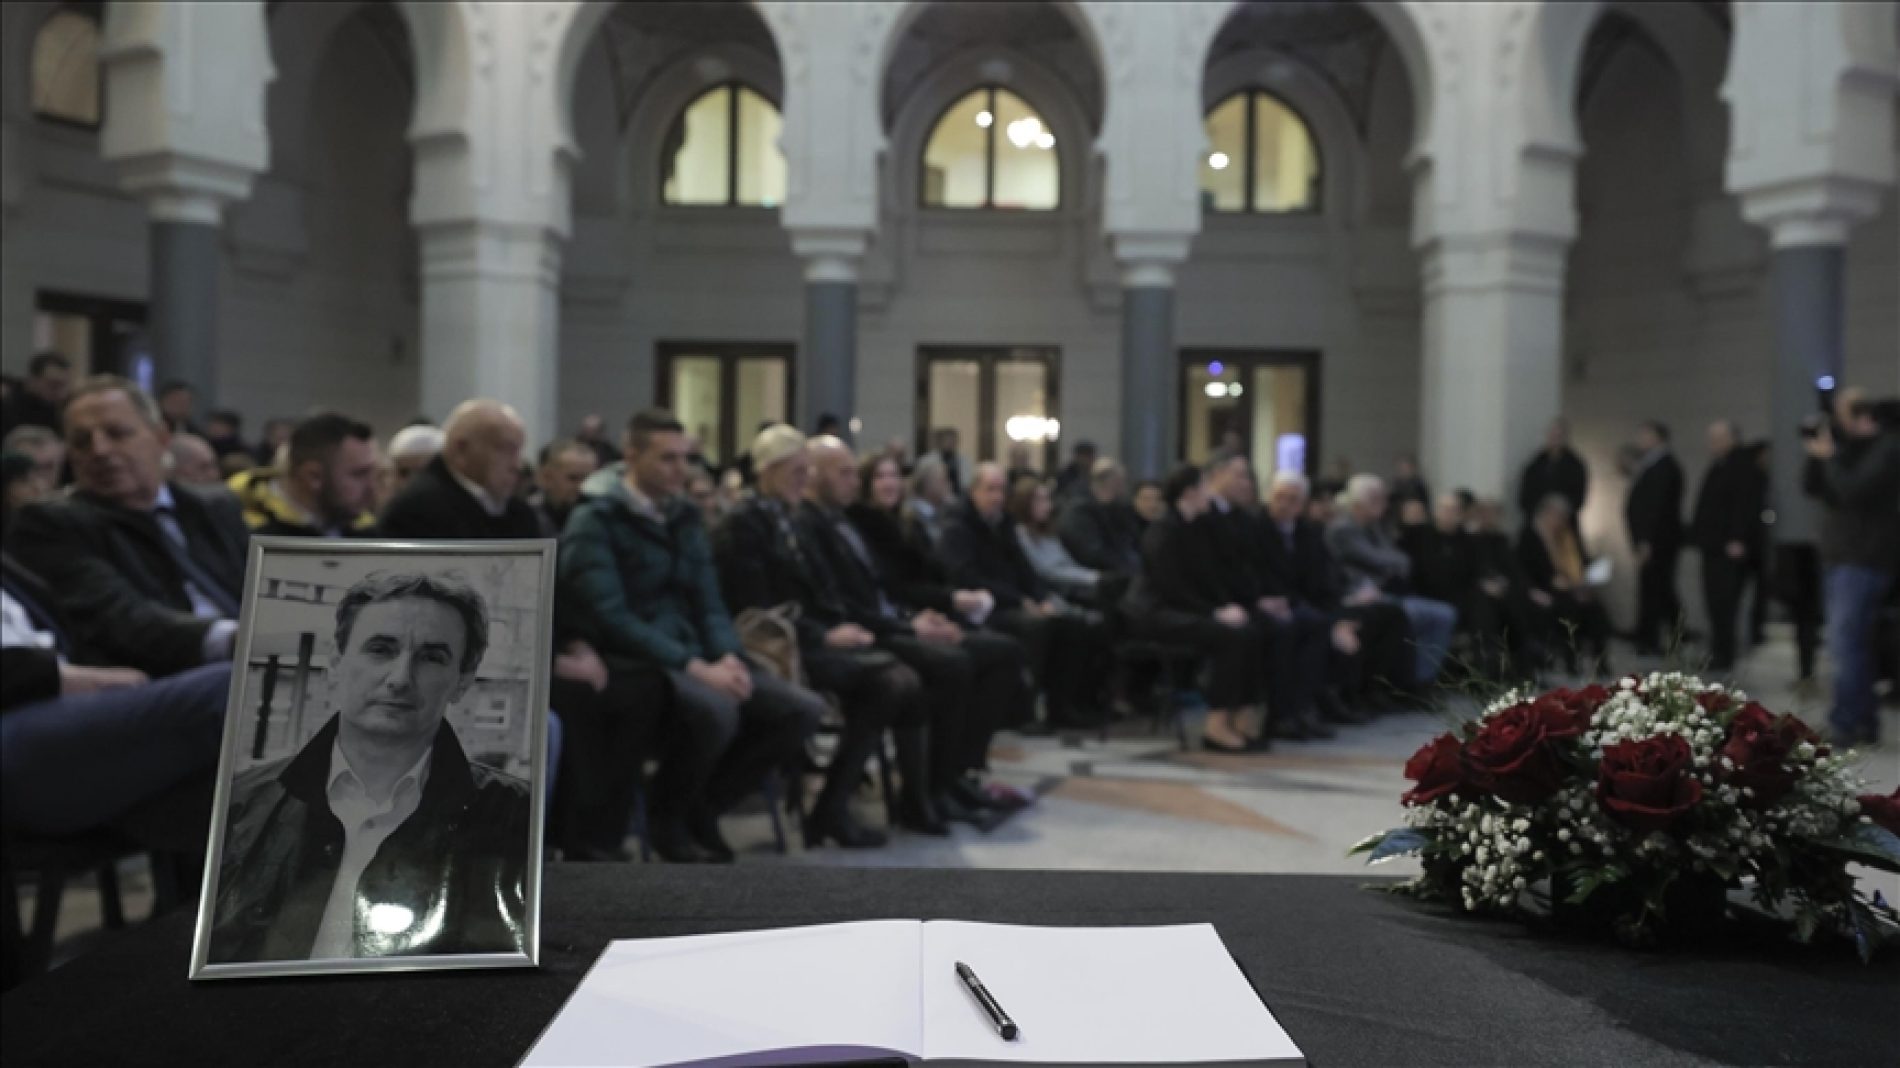 Komemoracija Hadžemu Hajdareviću: Njegov život i poezija veličali su dobro u čovjeku